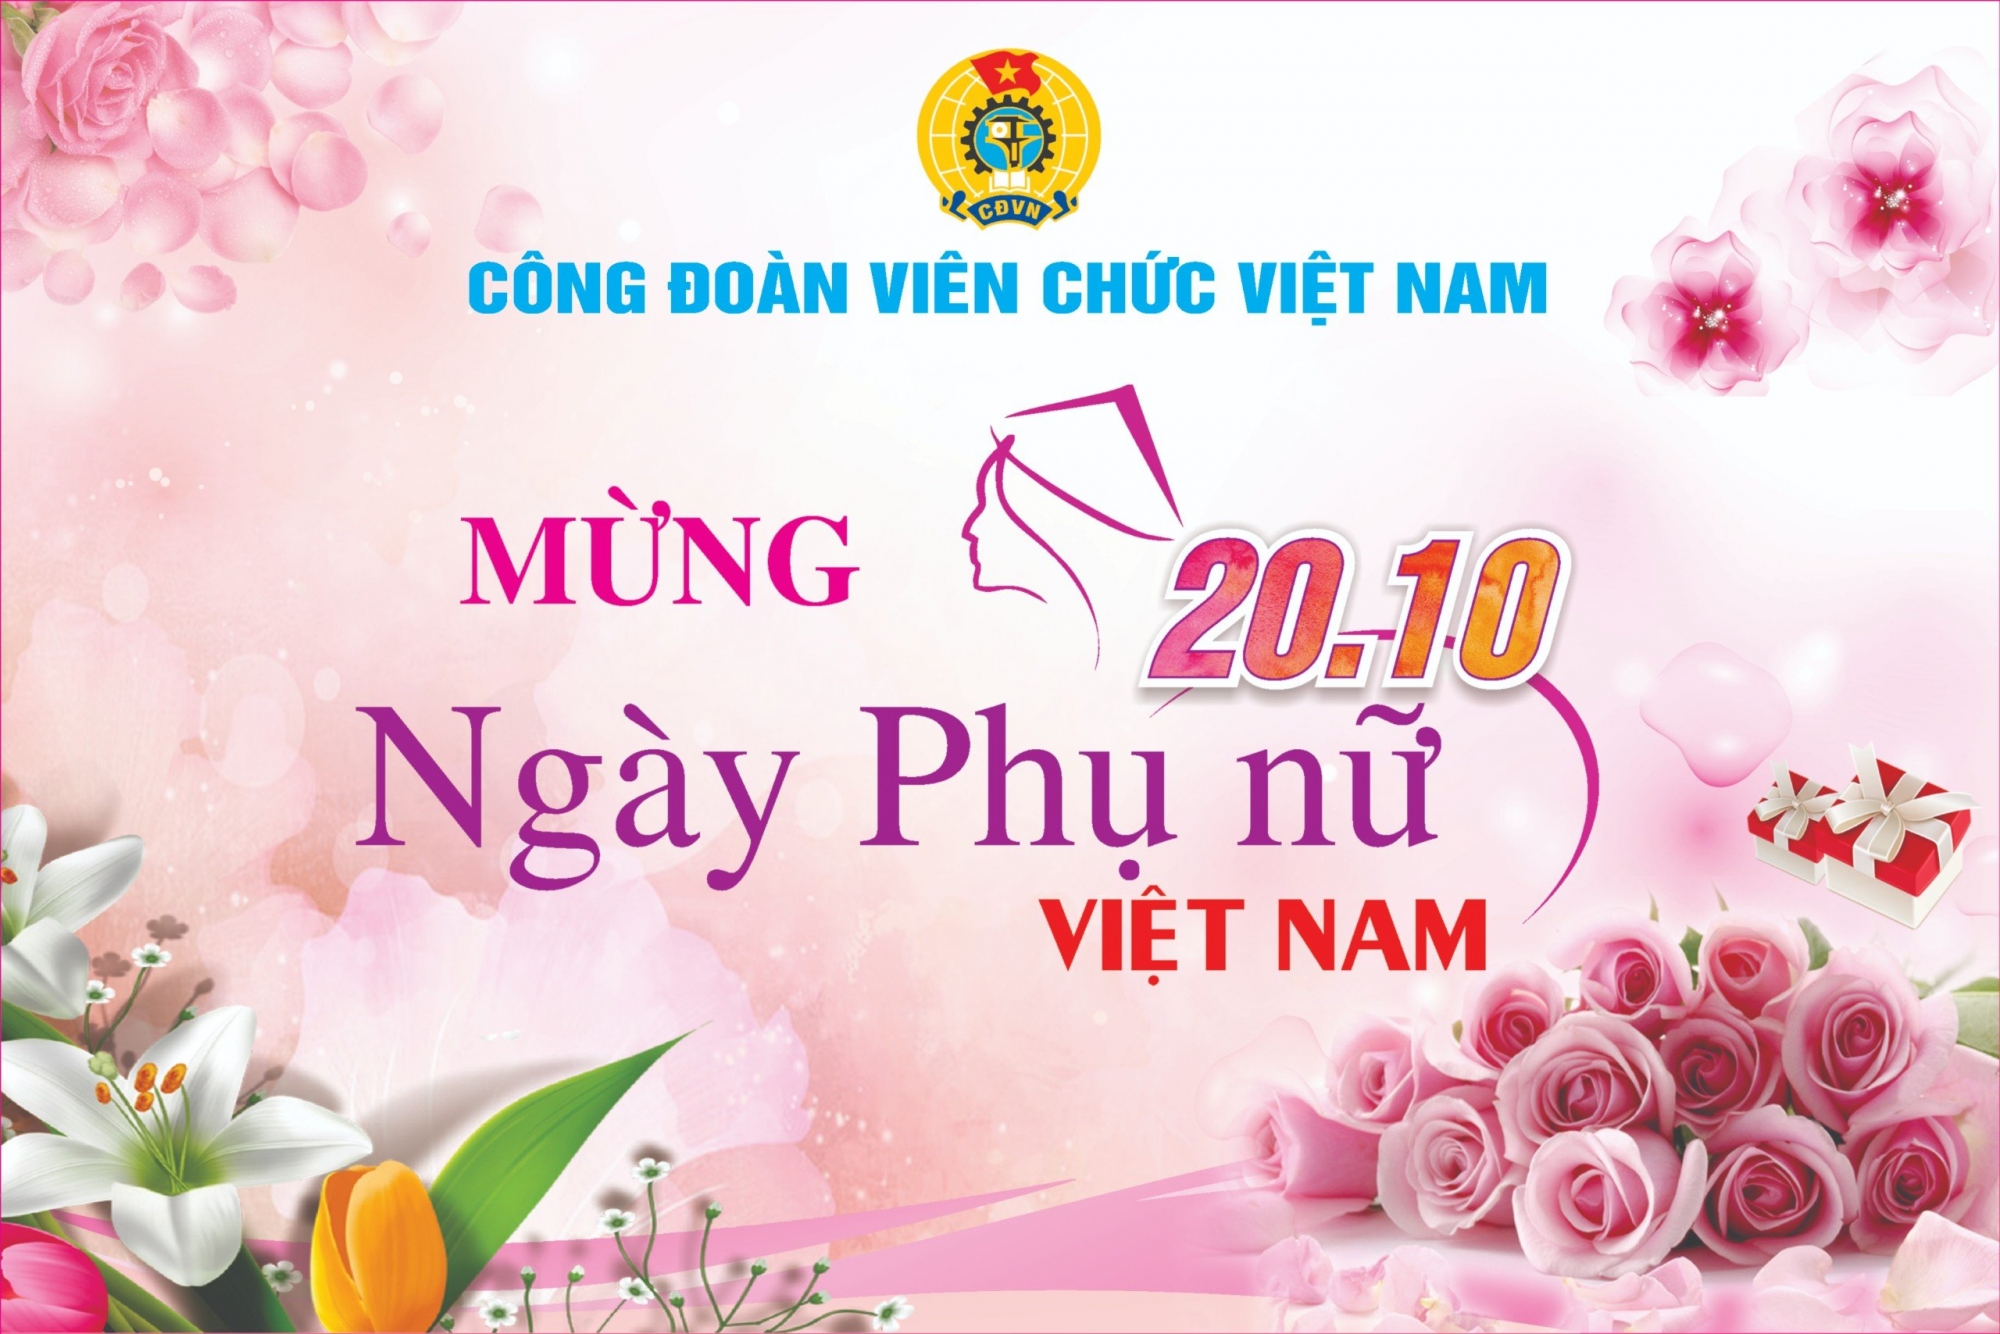 Nhiều hoạt động ý nghĩa chào mừng Ngày Phụ nữ Việt Nam của các cấp Công đoàn Viên chức Việt Nam